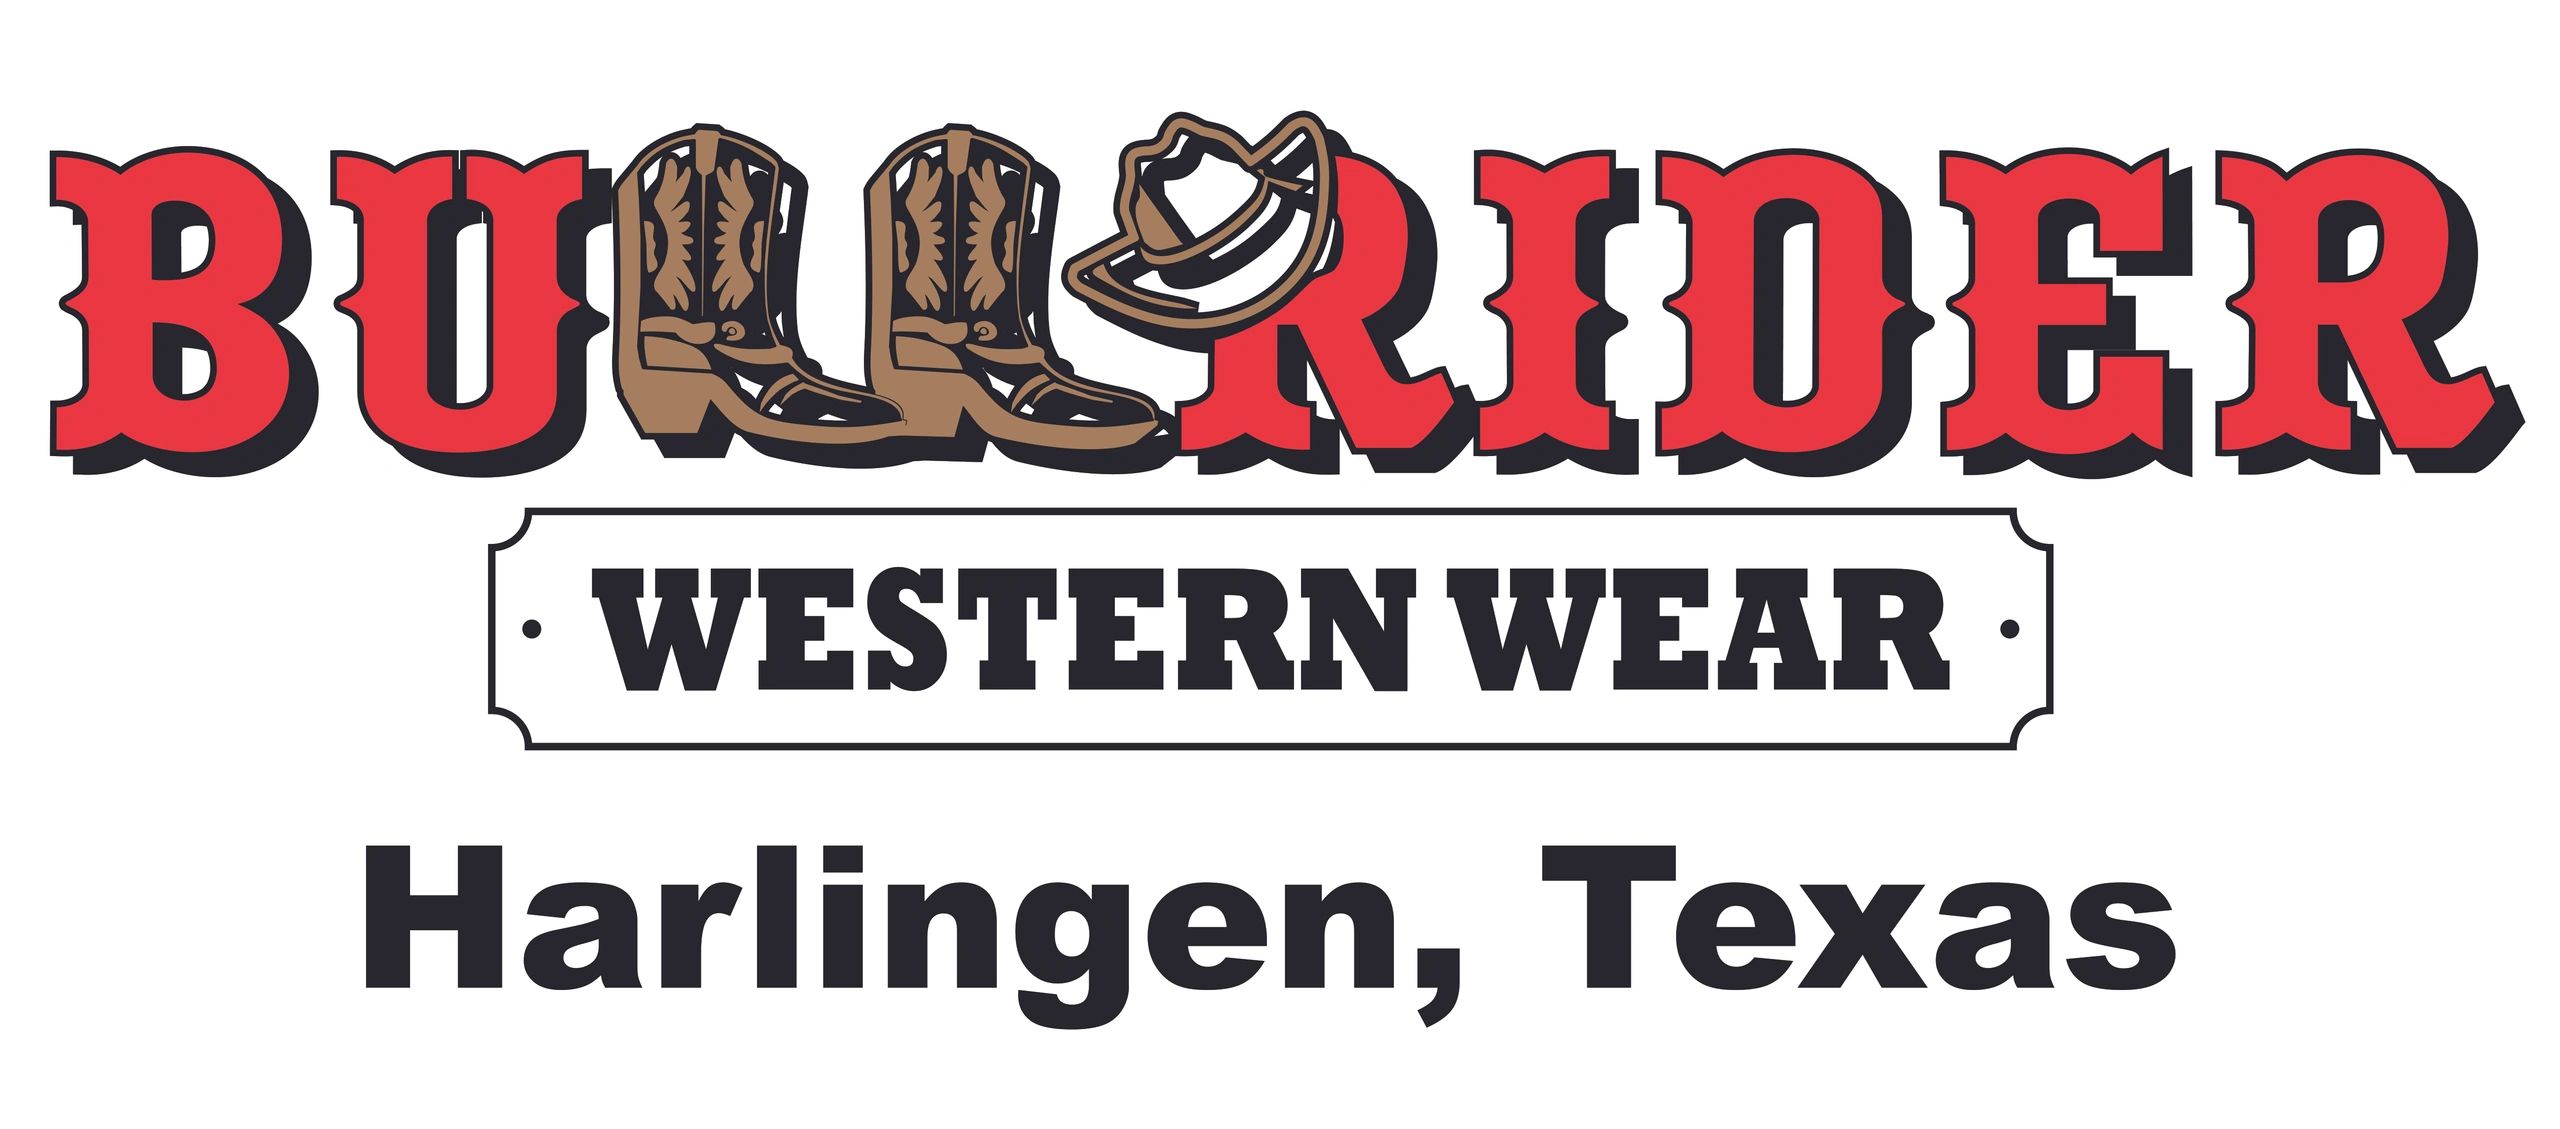 Bullrider Western Wear